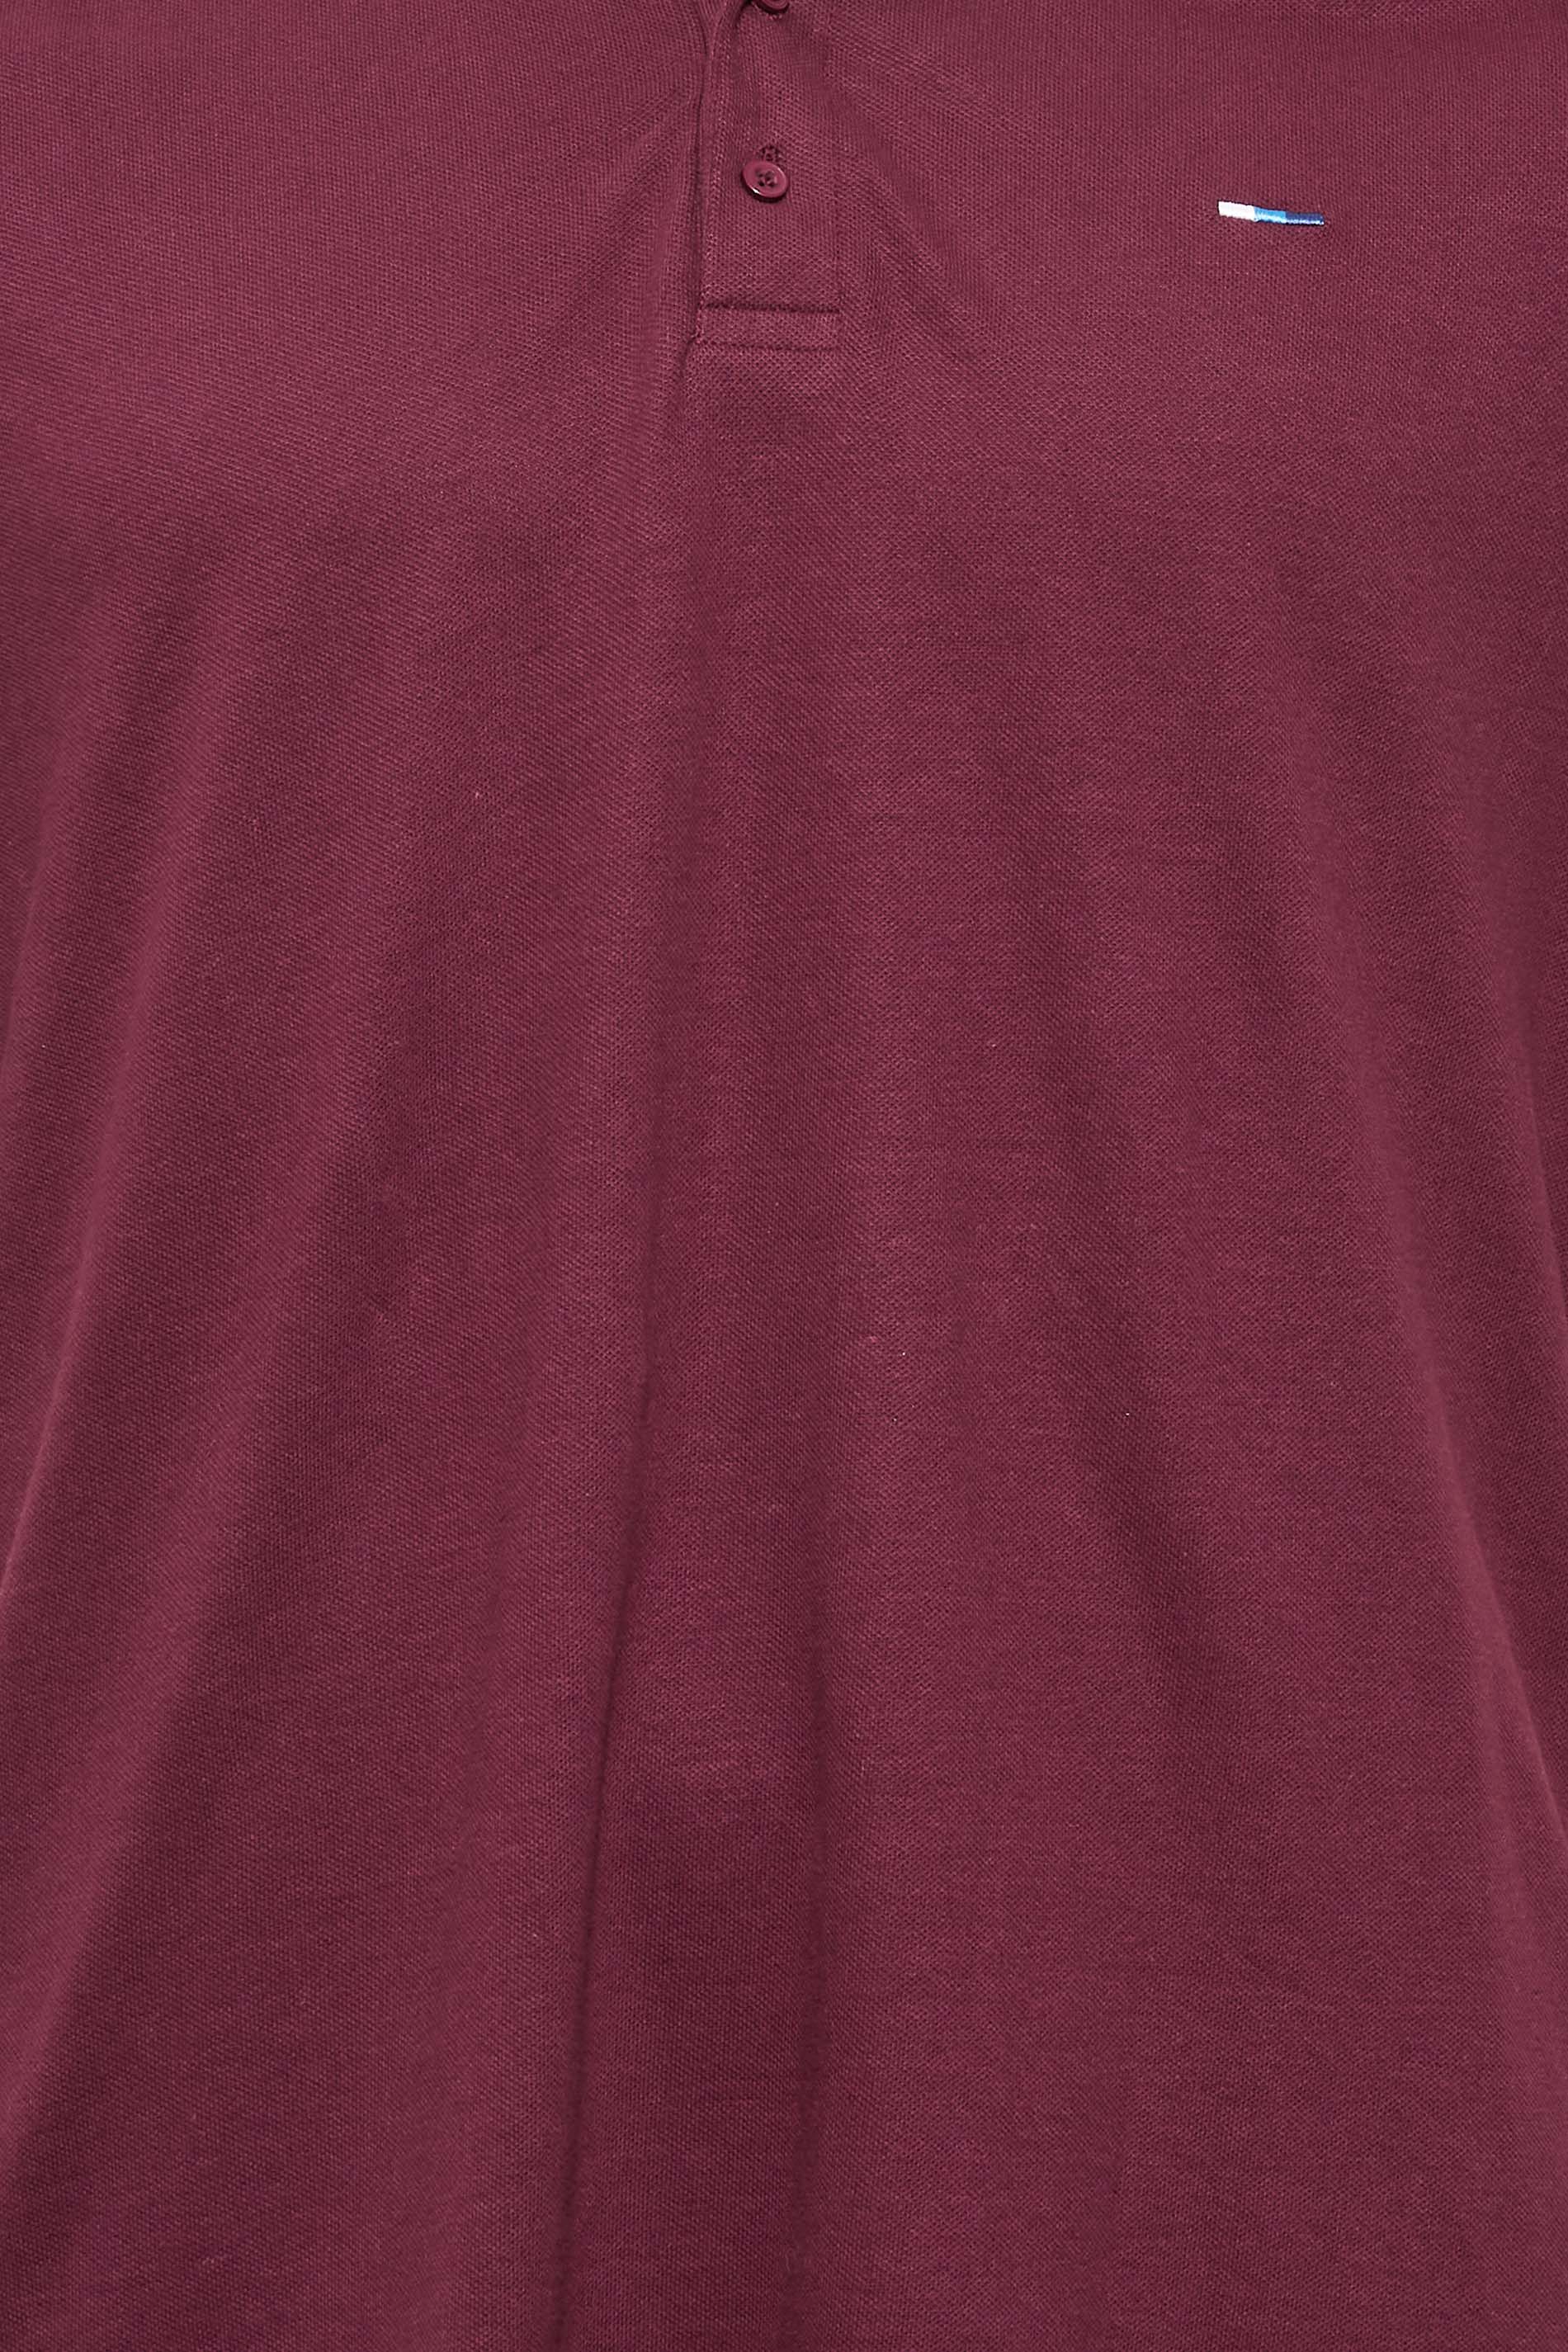 BadRhino Big & Tall Dark Red Essential Tipped Polo Shirt | BadRhino 2